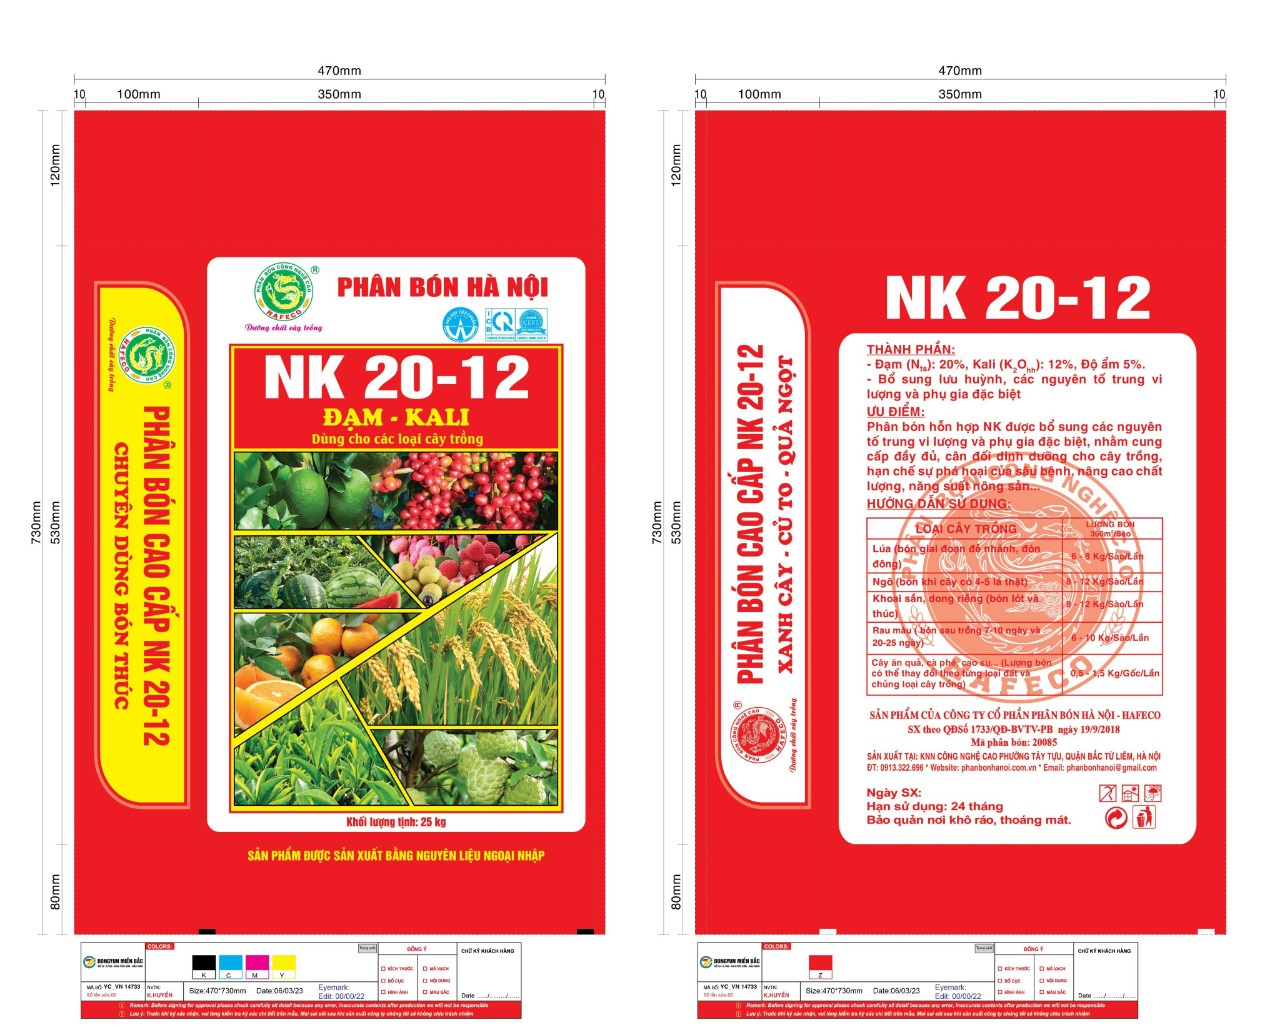 NK 20-12 - HAFECO - Công Ty Cổ Phần Phân Bón Hà Nội